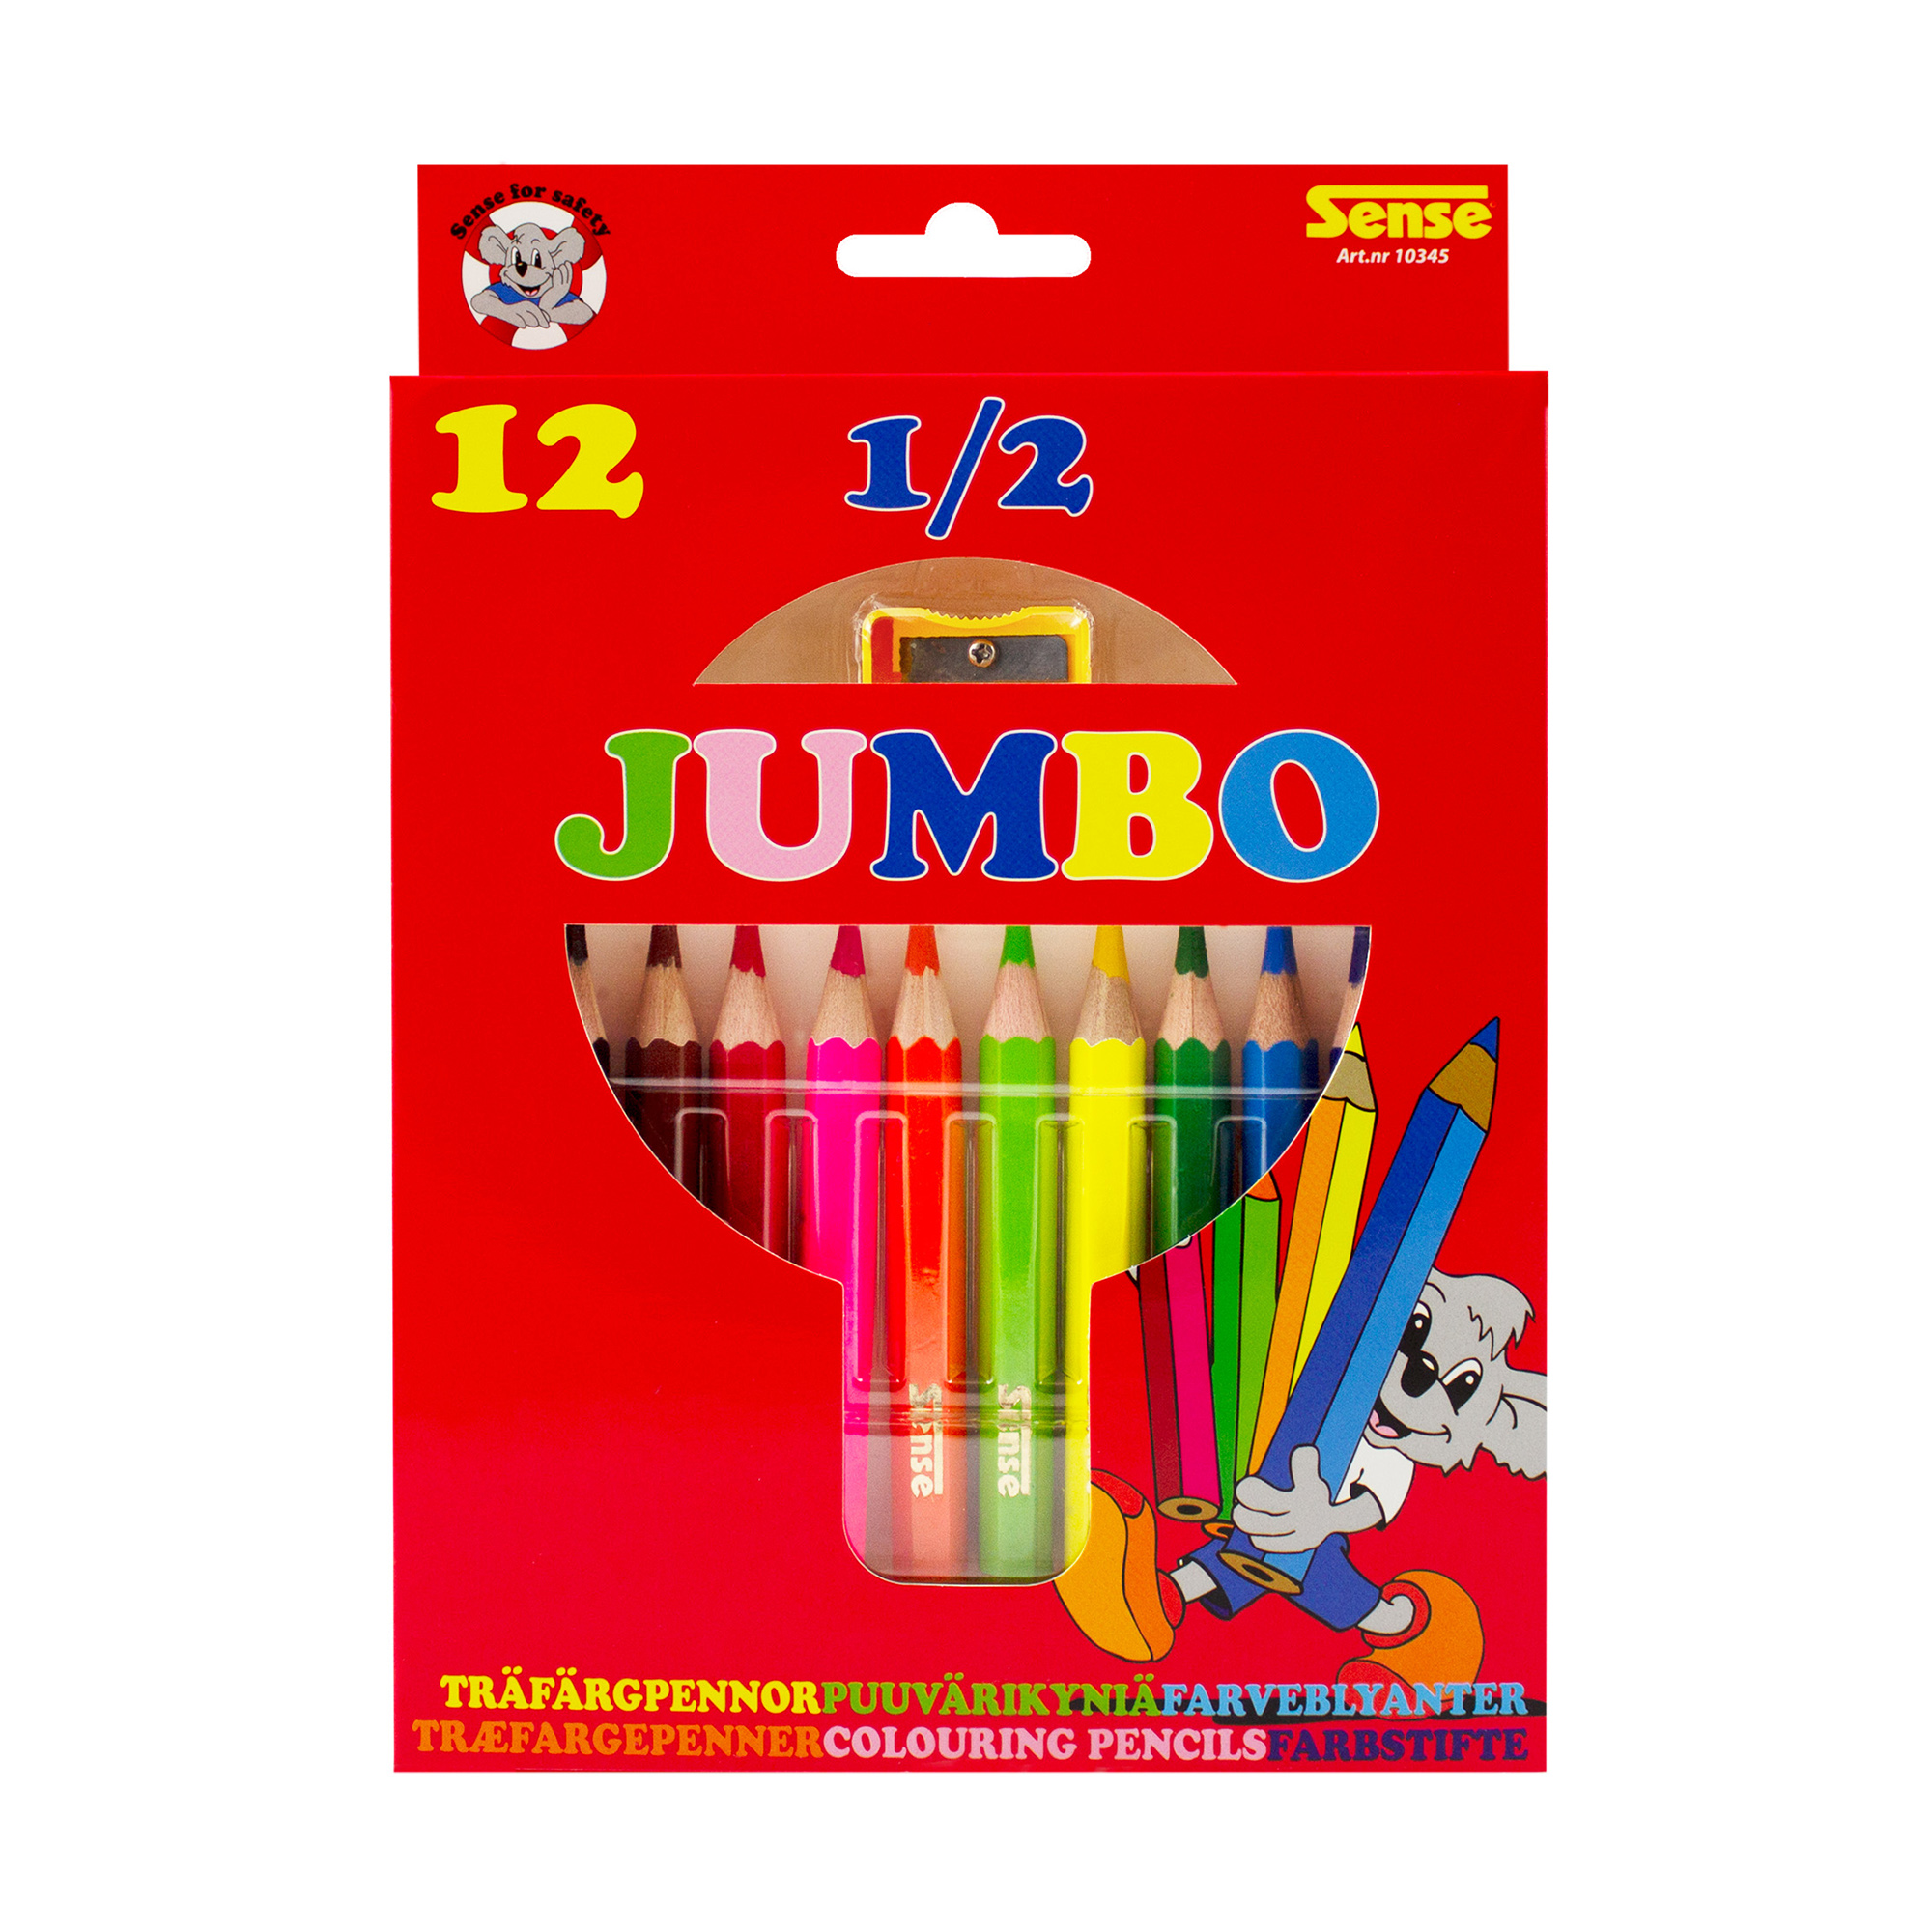 SENSE Träfärgpennor 1/2 Jumbo 12-pack